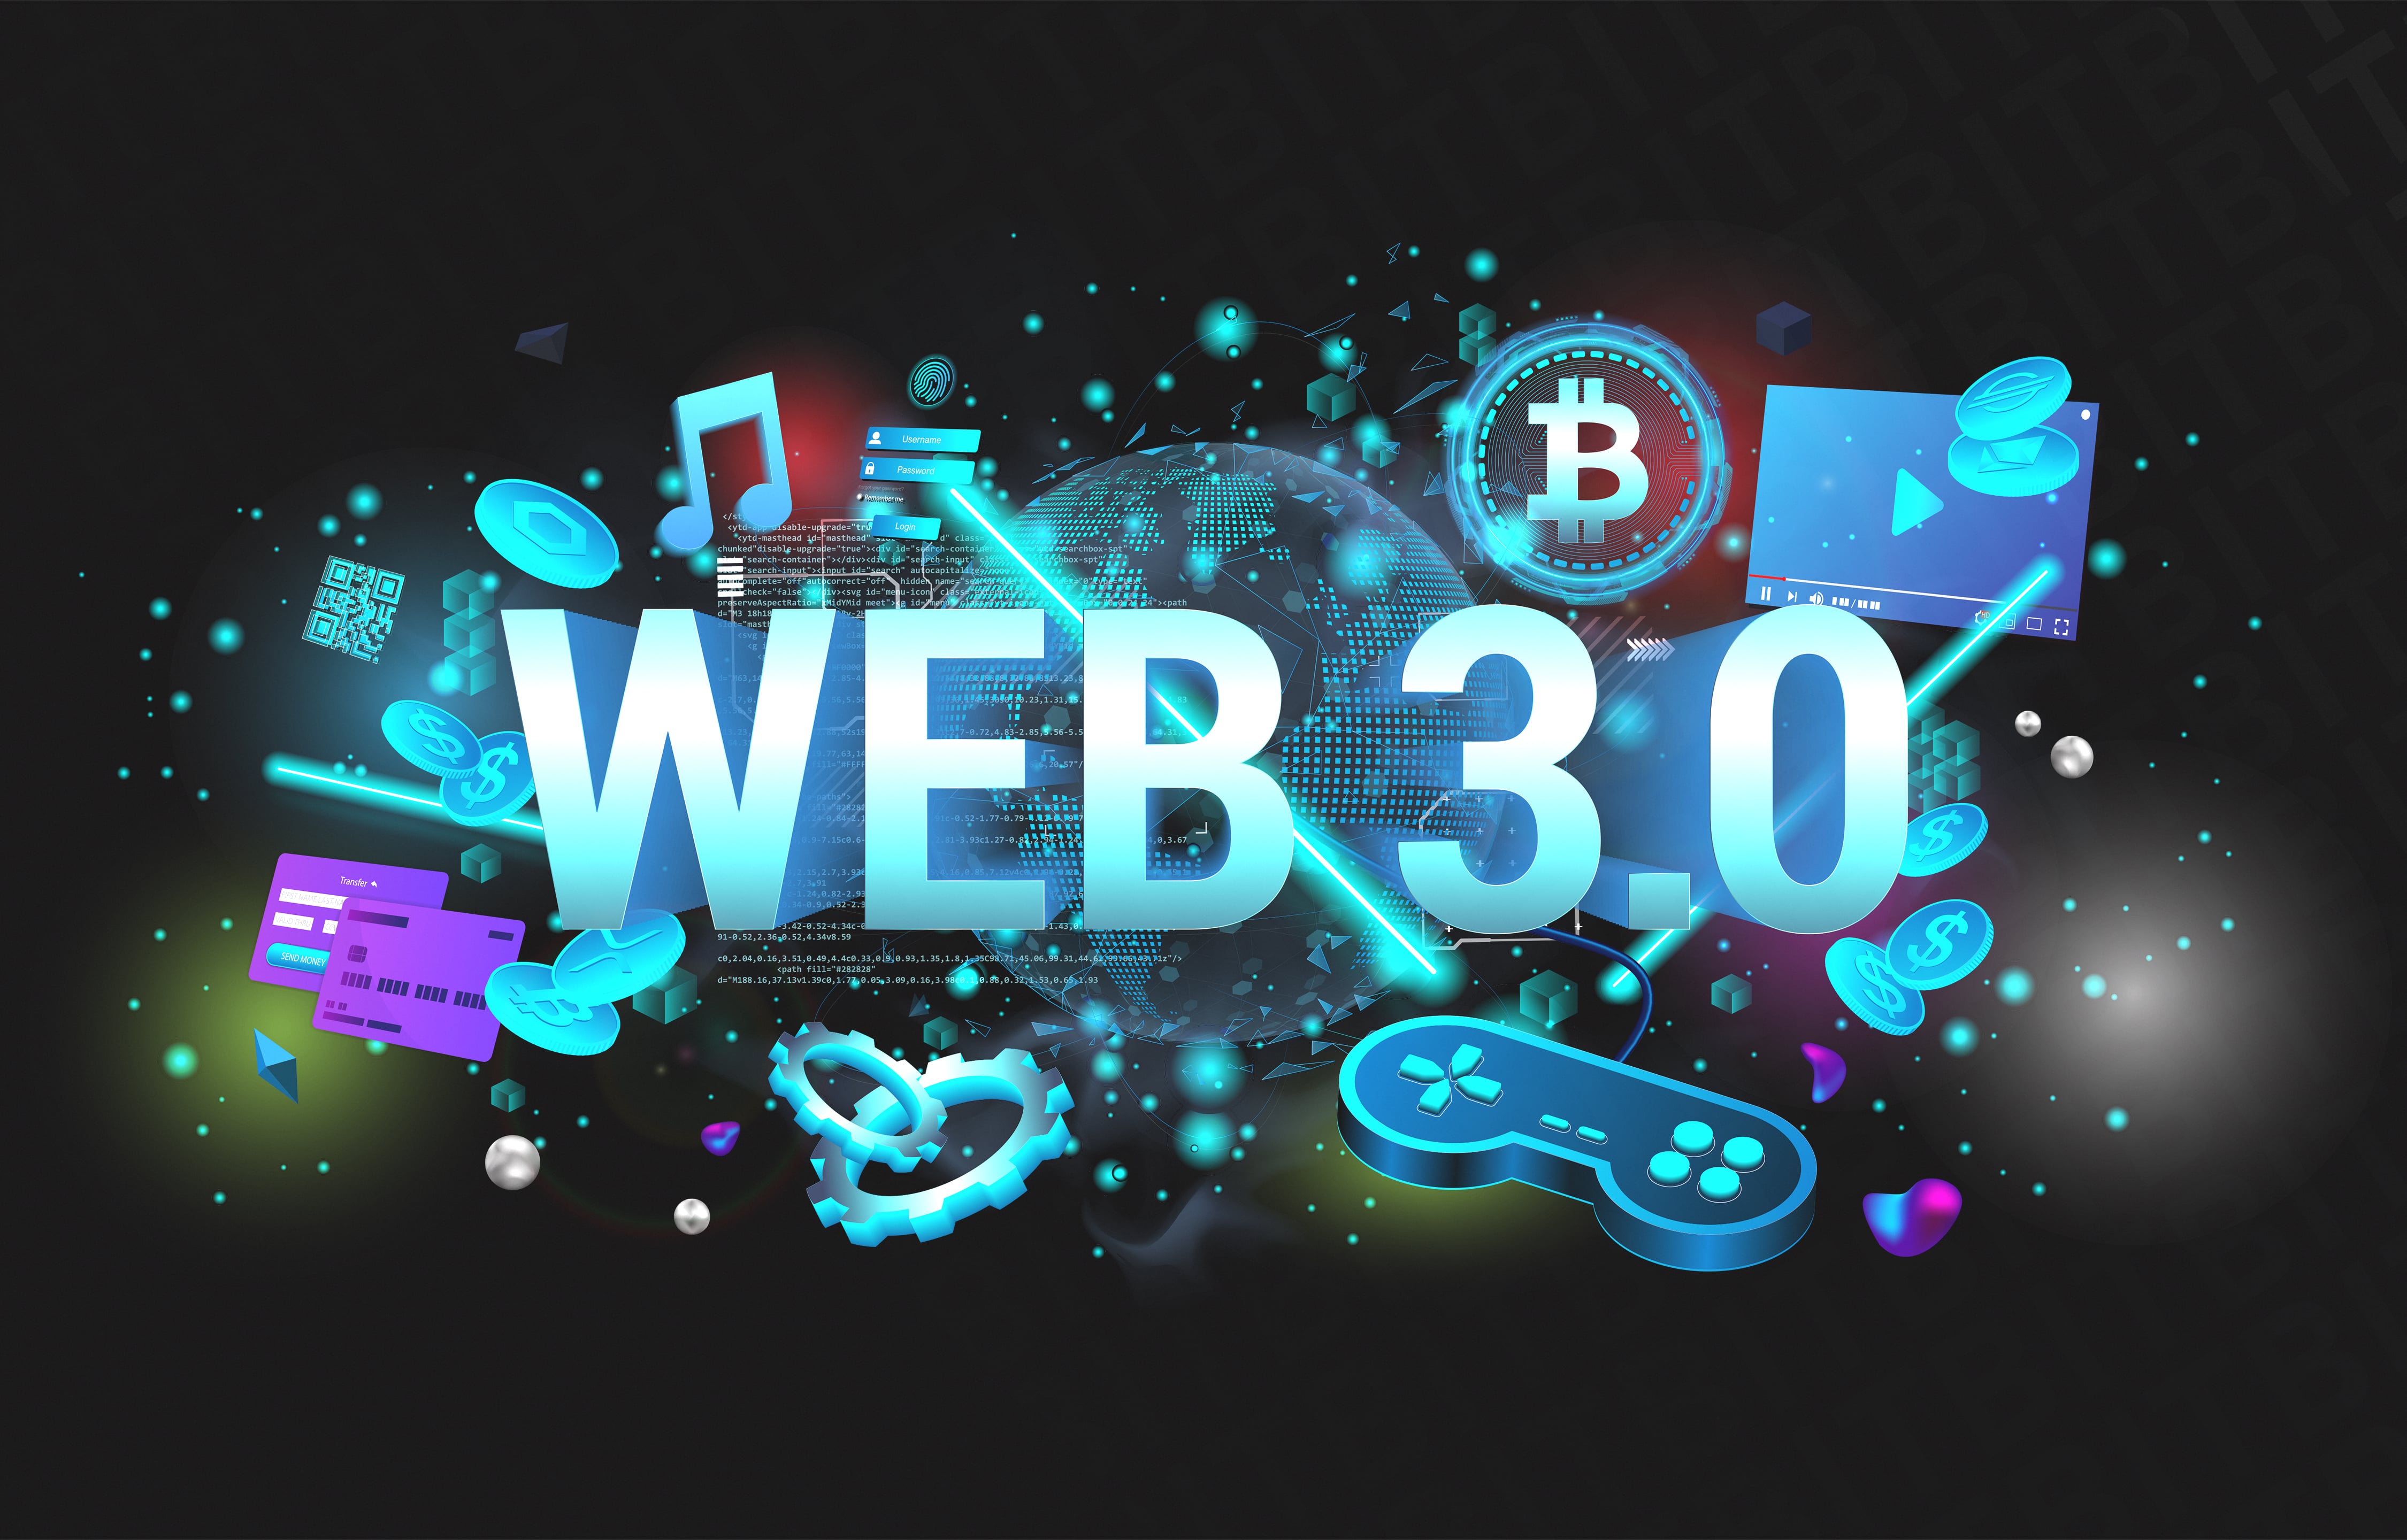 ¿Qué es Web3?